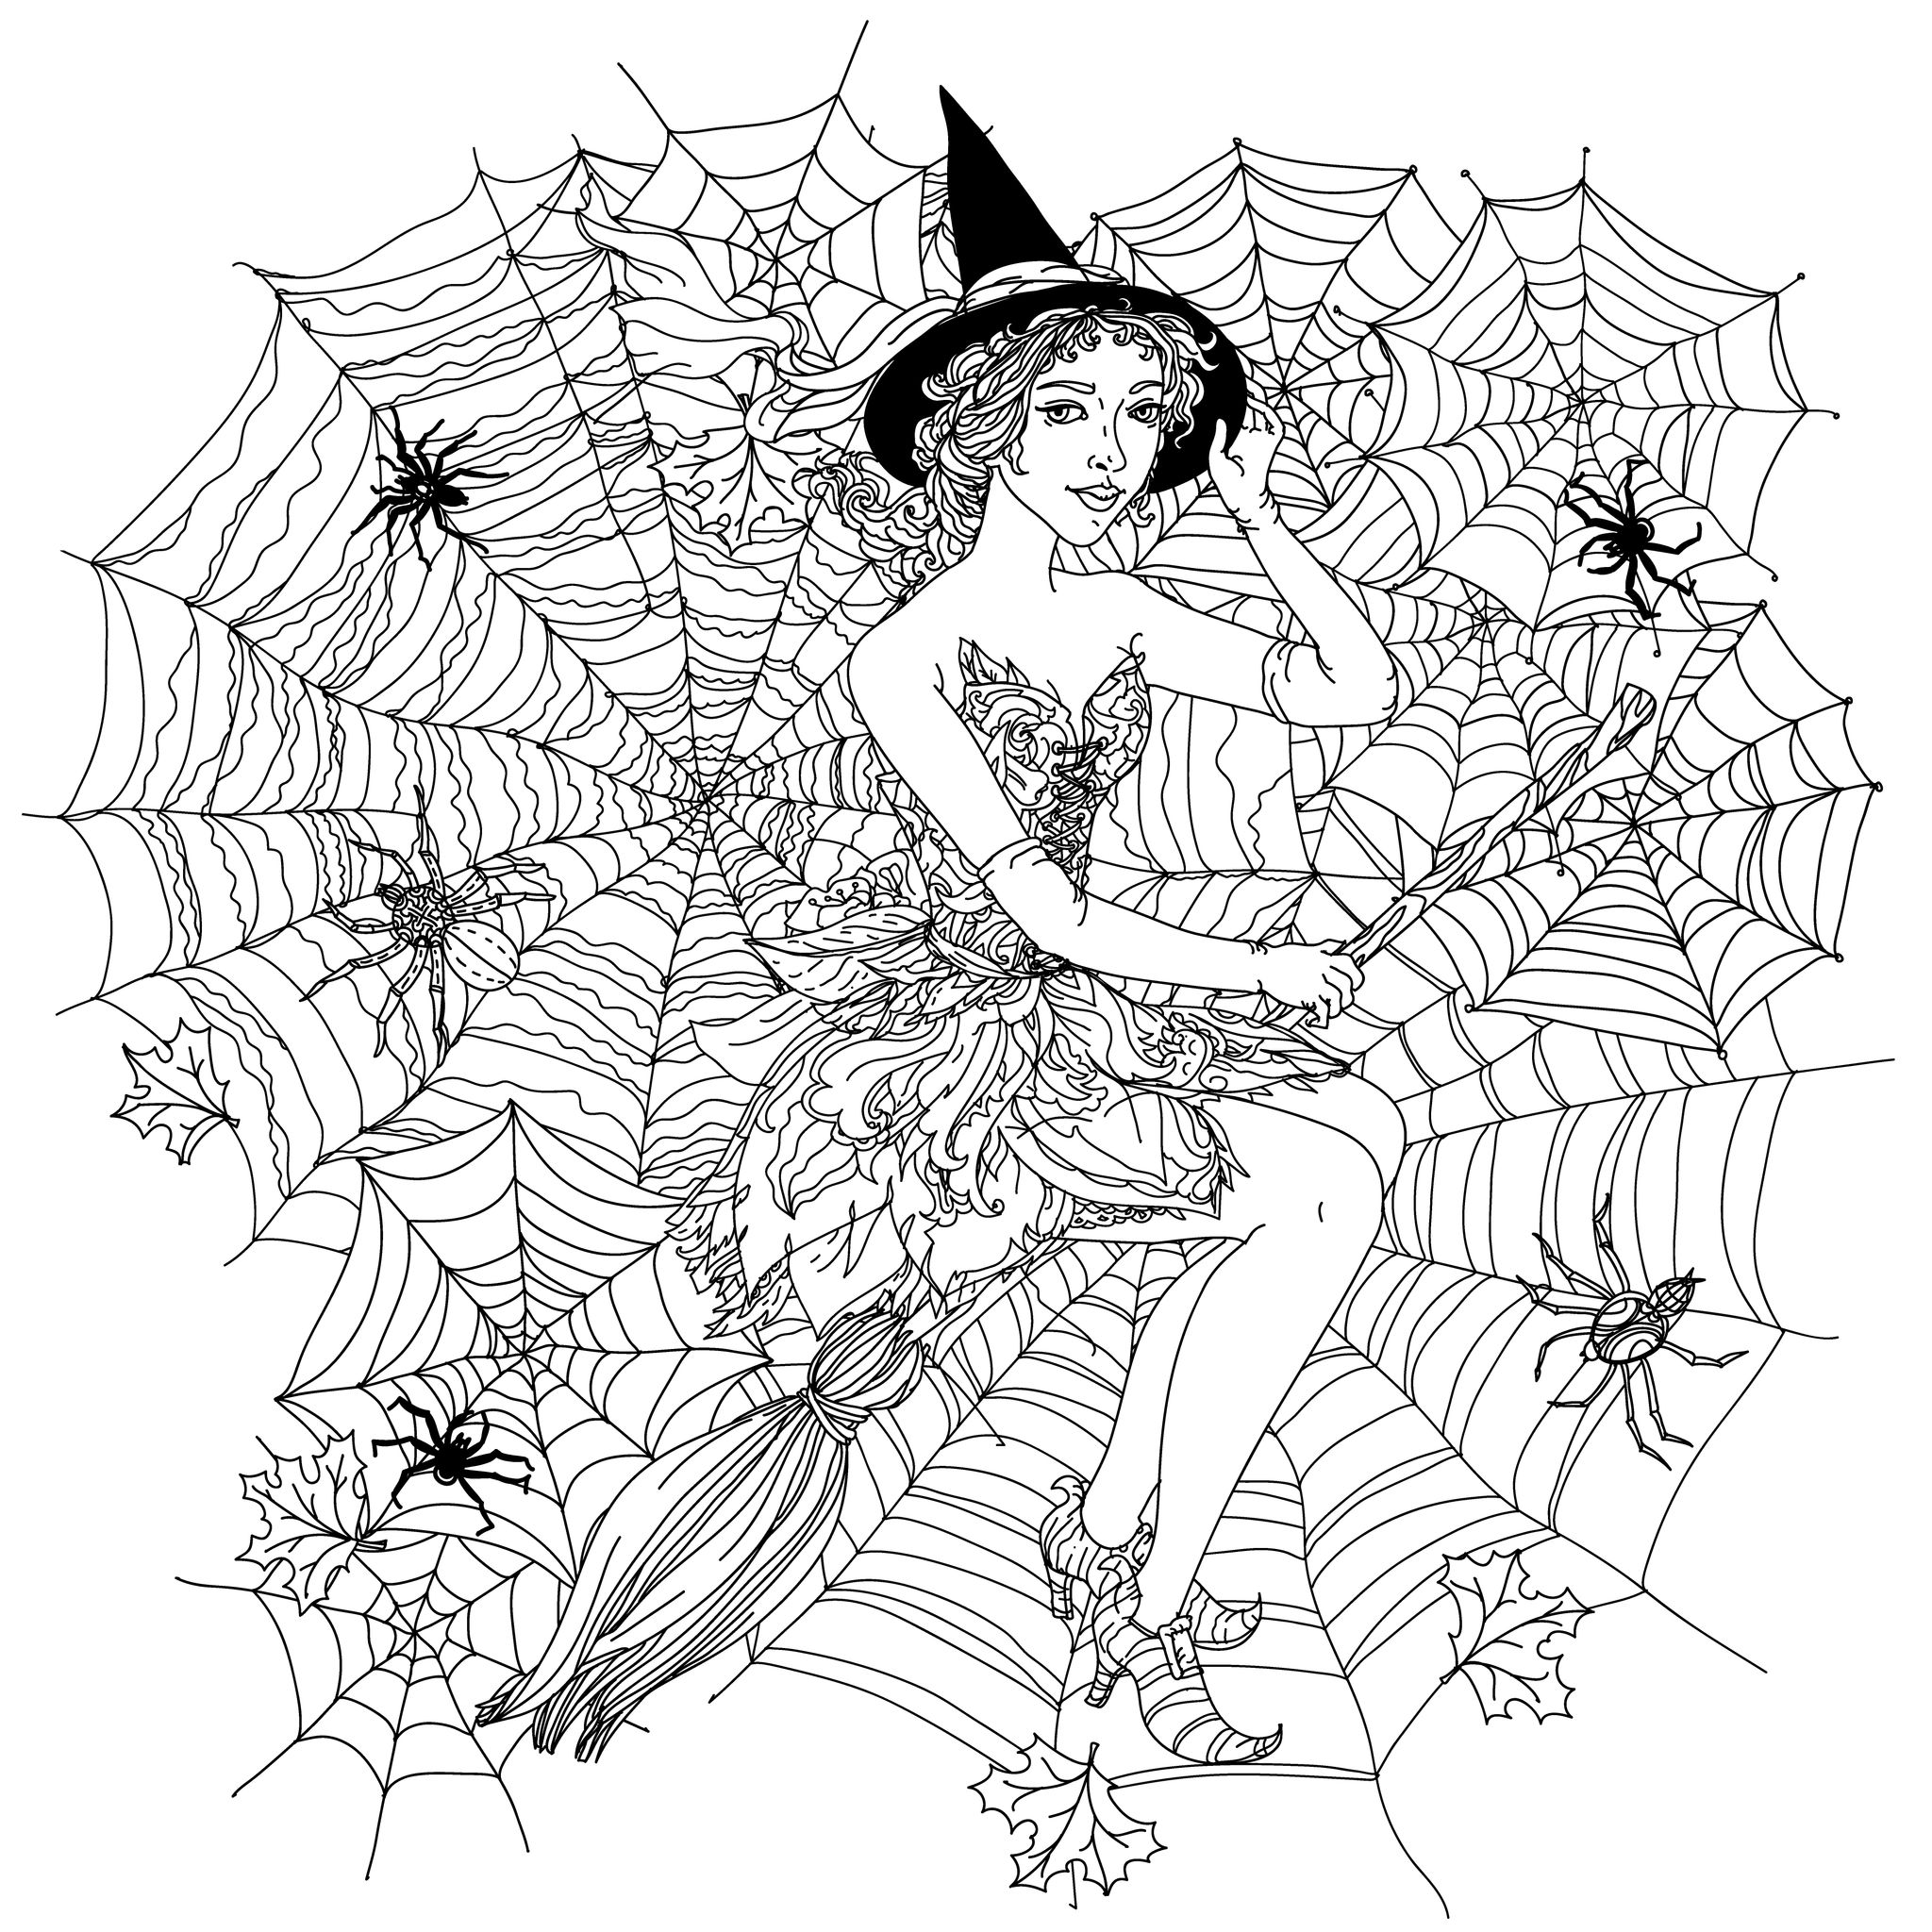 Halloween witch in spider web by mashabr